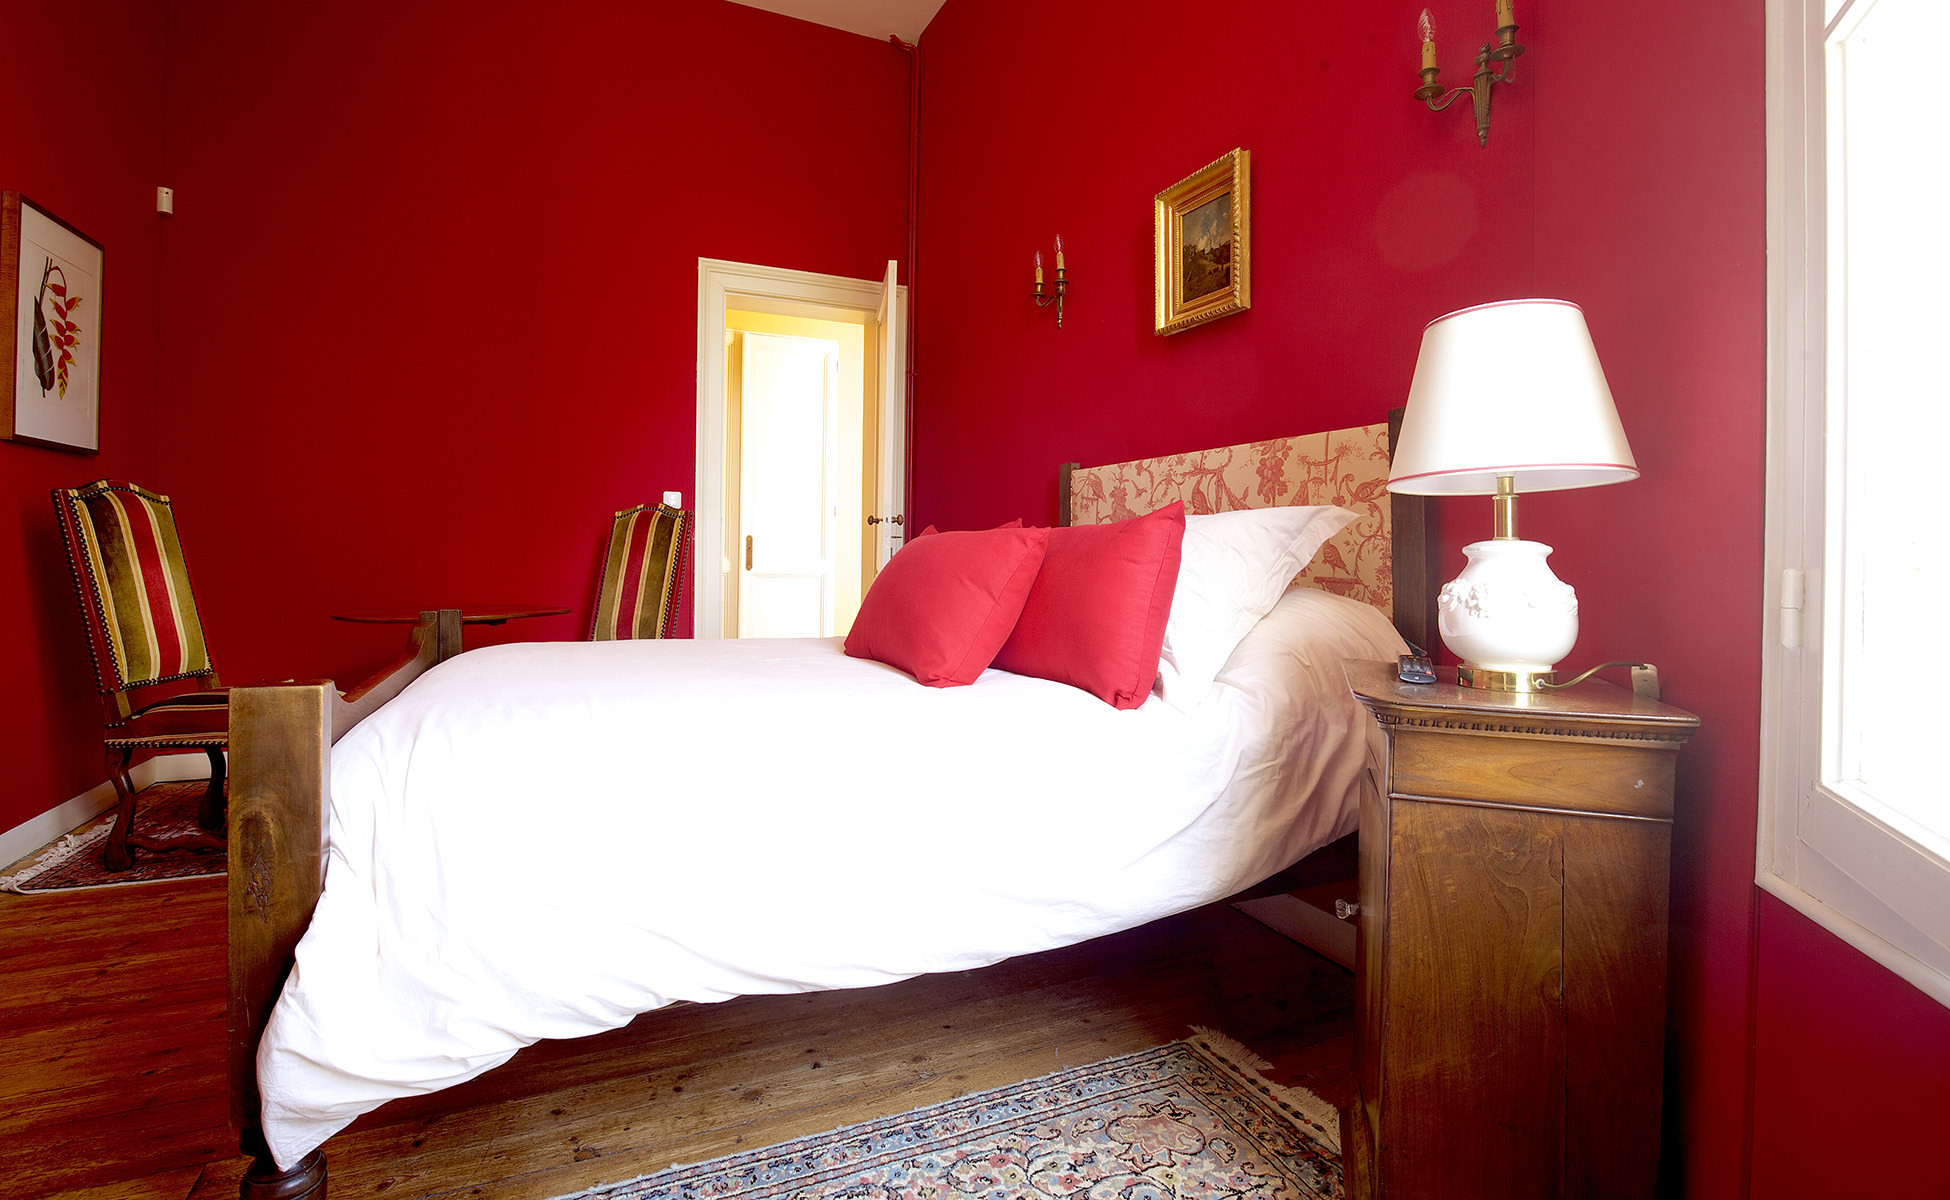 Lovelydays luxury service apartment rental - Libourne - Chateau de JUNAYME - Lovelysuite - 7 bedrooms - 6 bathrooms - King bed - dd5670865f41 - Lovelydays